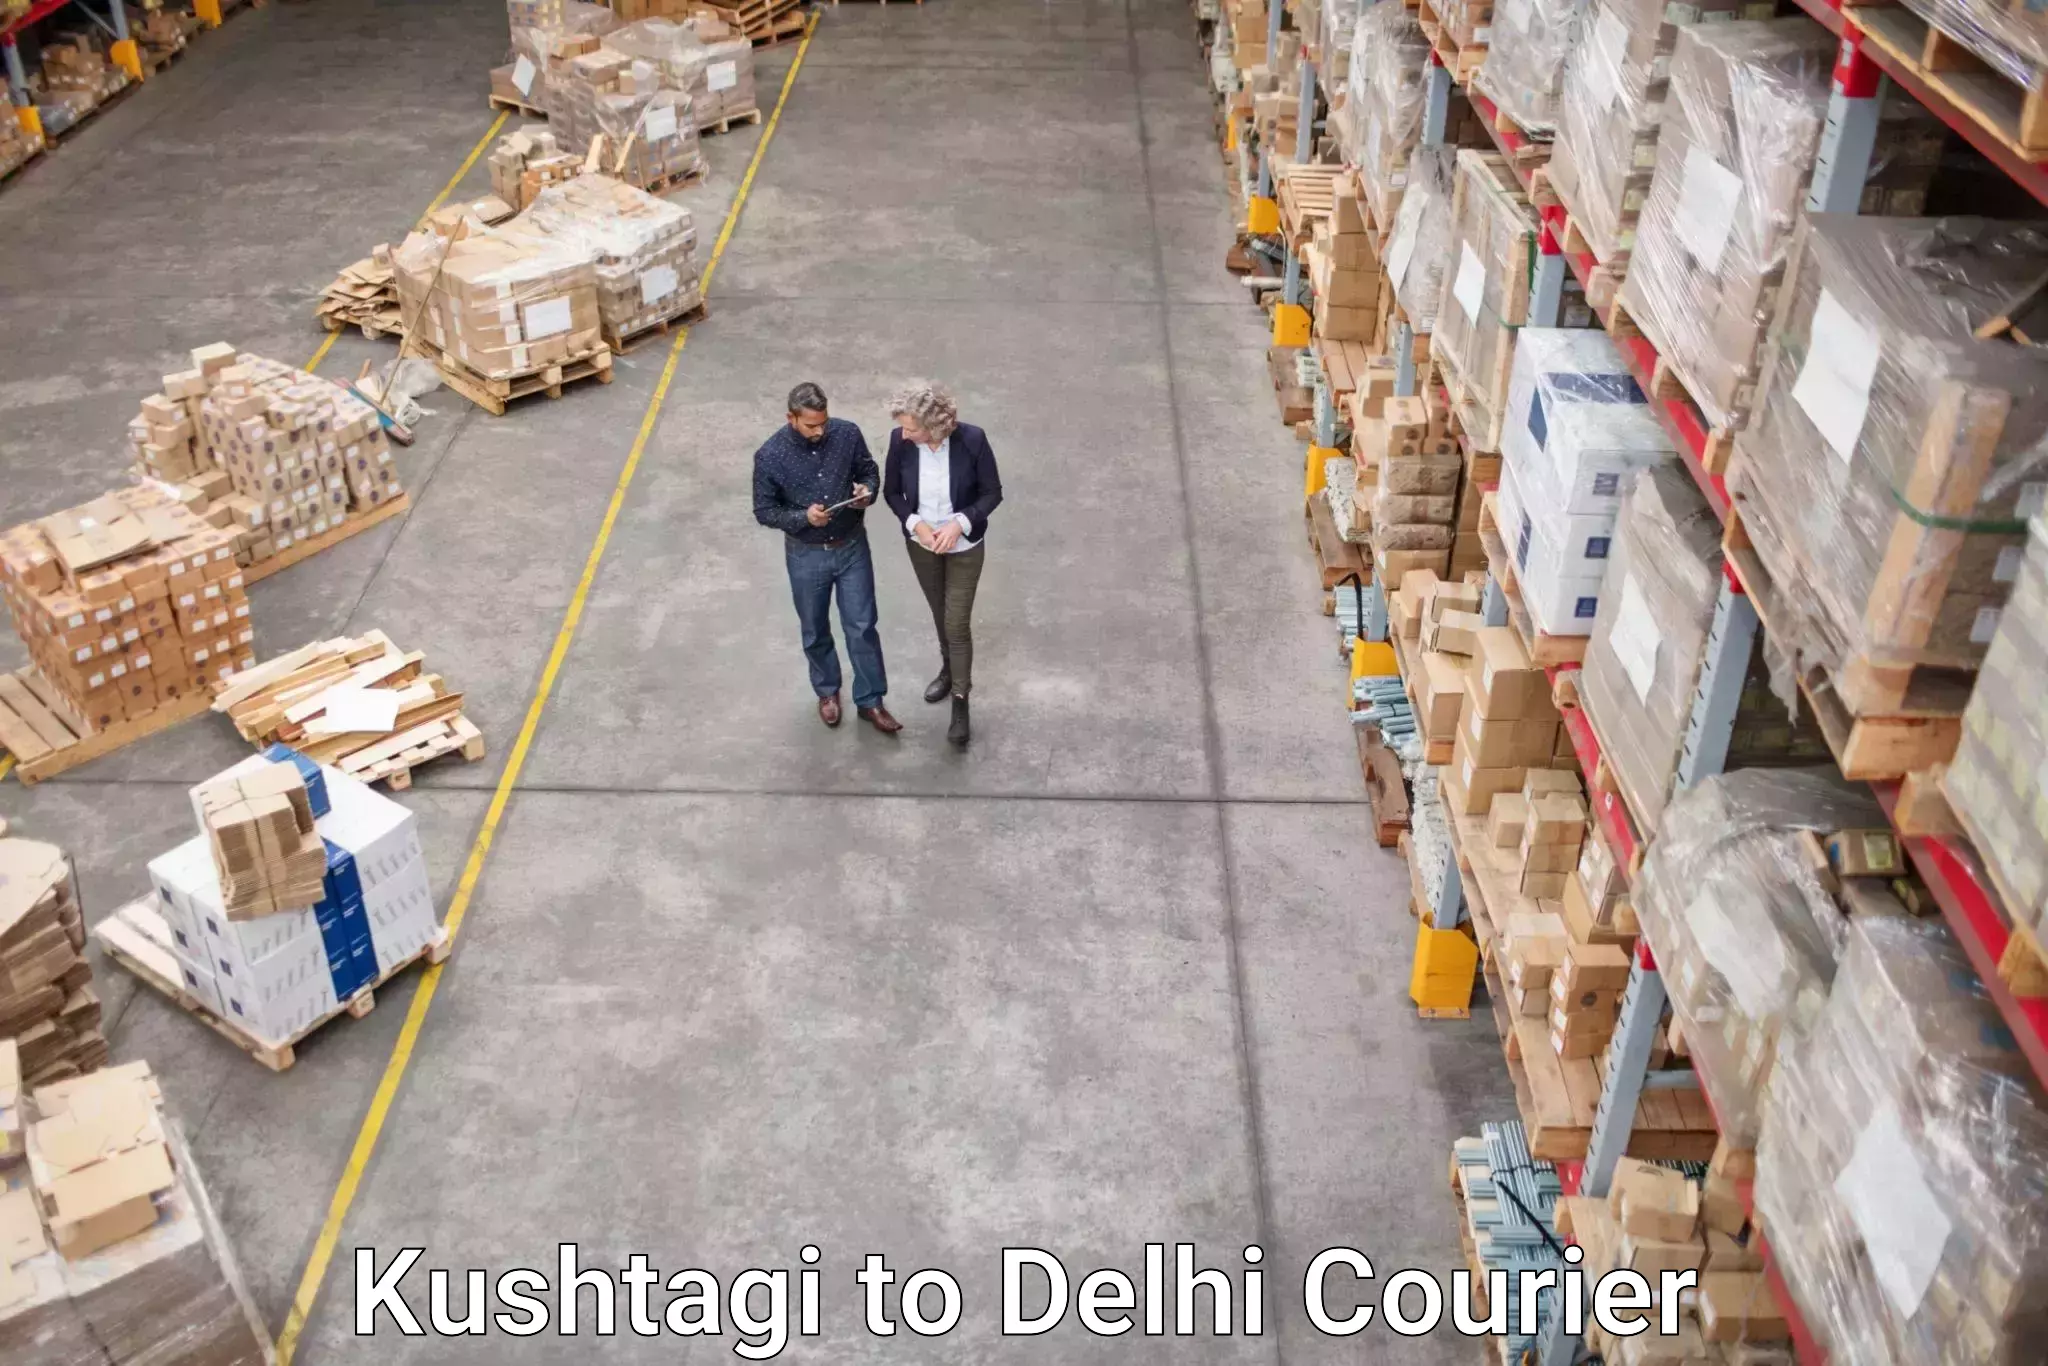 Next-generation courier services Kushtagi to Subhash Nagar